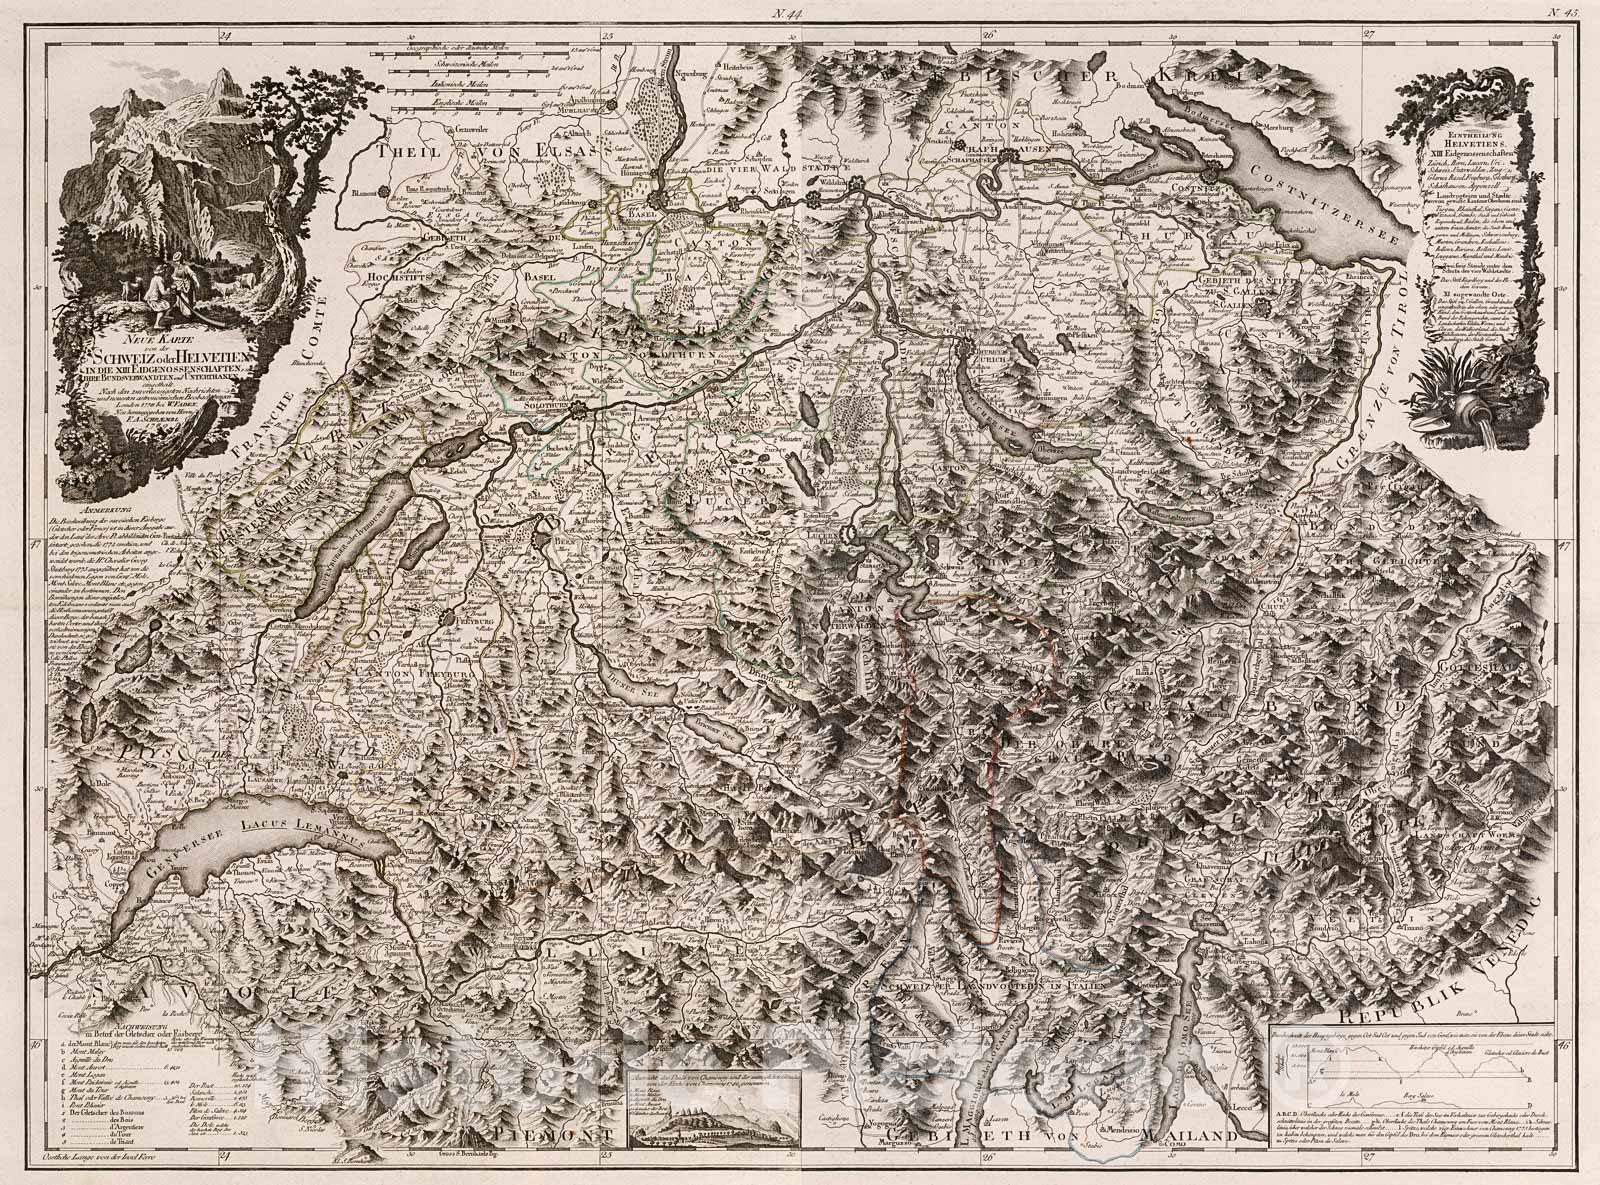 Historic Map : 44-45. Neue Karte Schweiz oder Helvetien in die XIII Eidgenossenschaften., 1800, Vintage Wall Decor